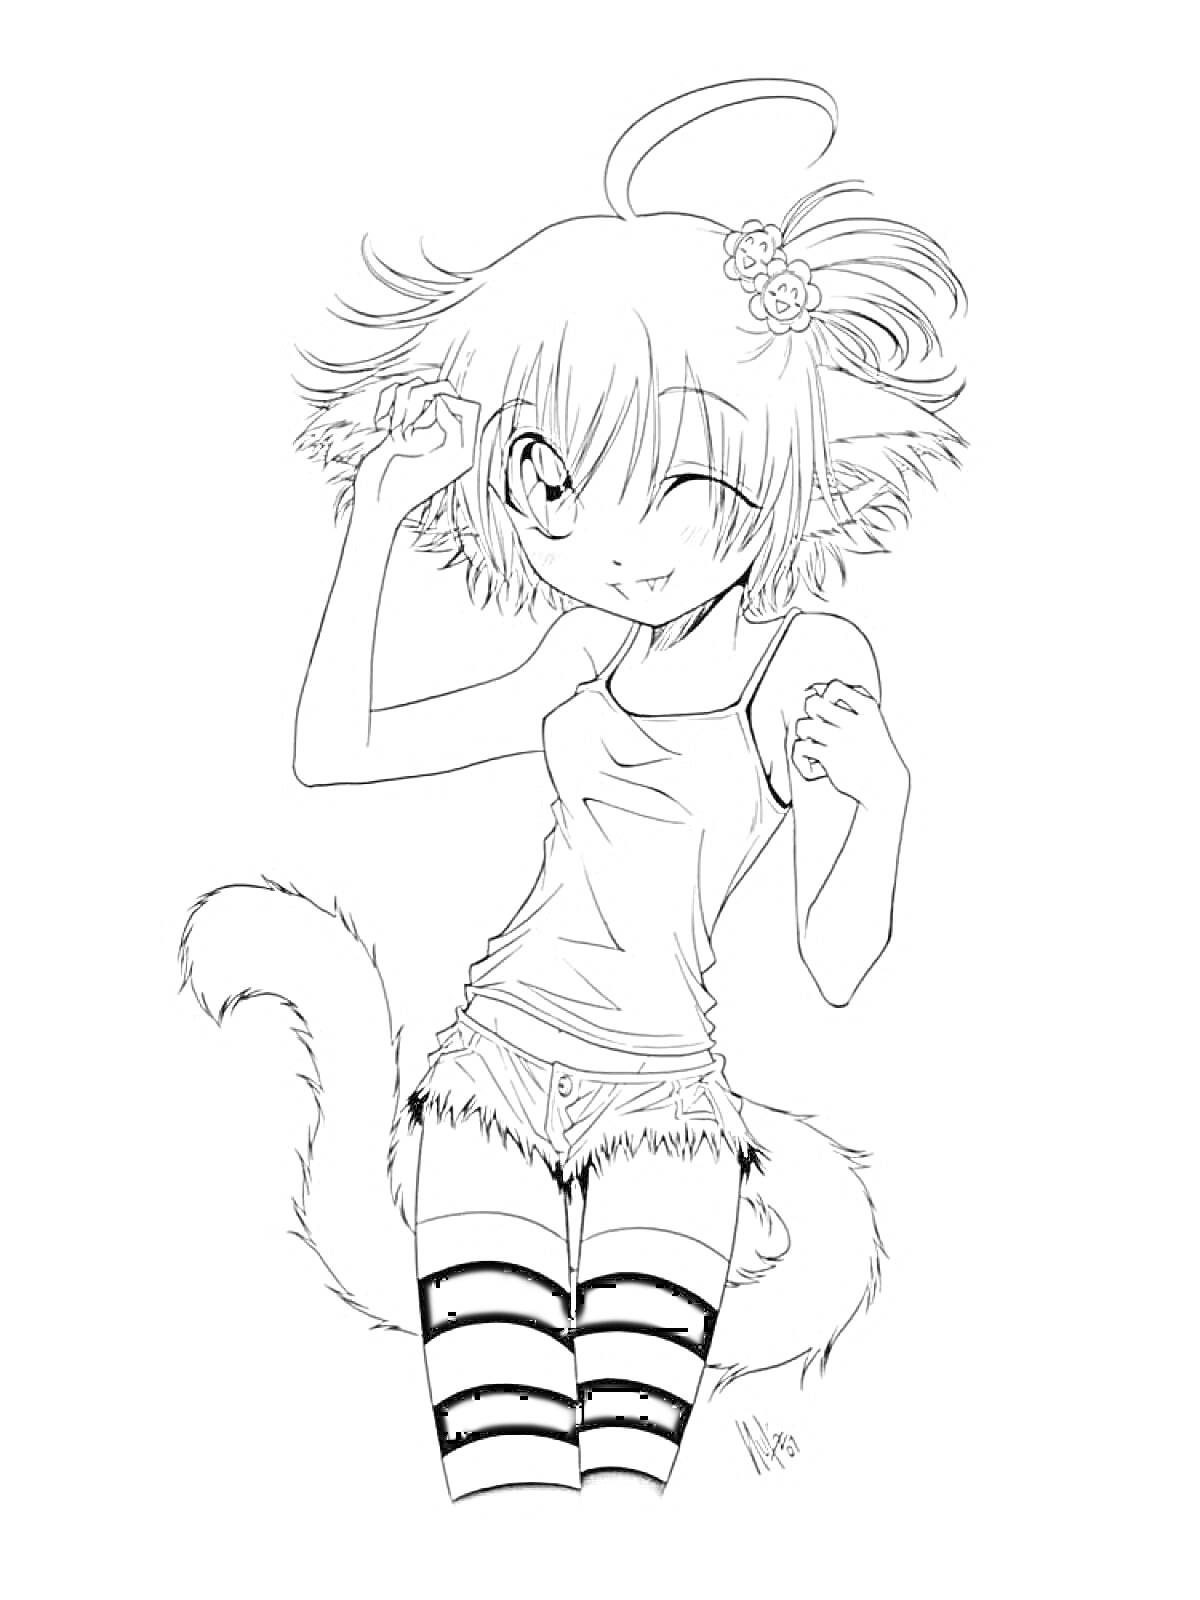 Раскраска Аниме персонаж с кошачьими ушками, хвостом, в цветочке на голове, в майке и шортах, с полосатыми чулками